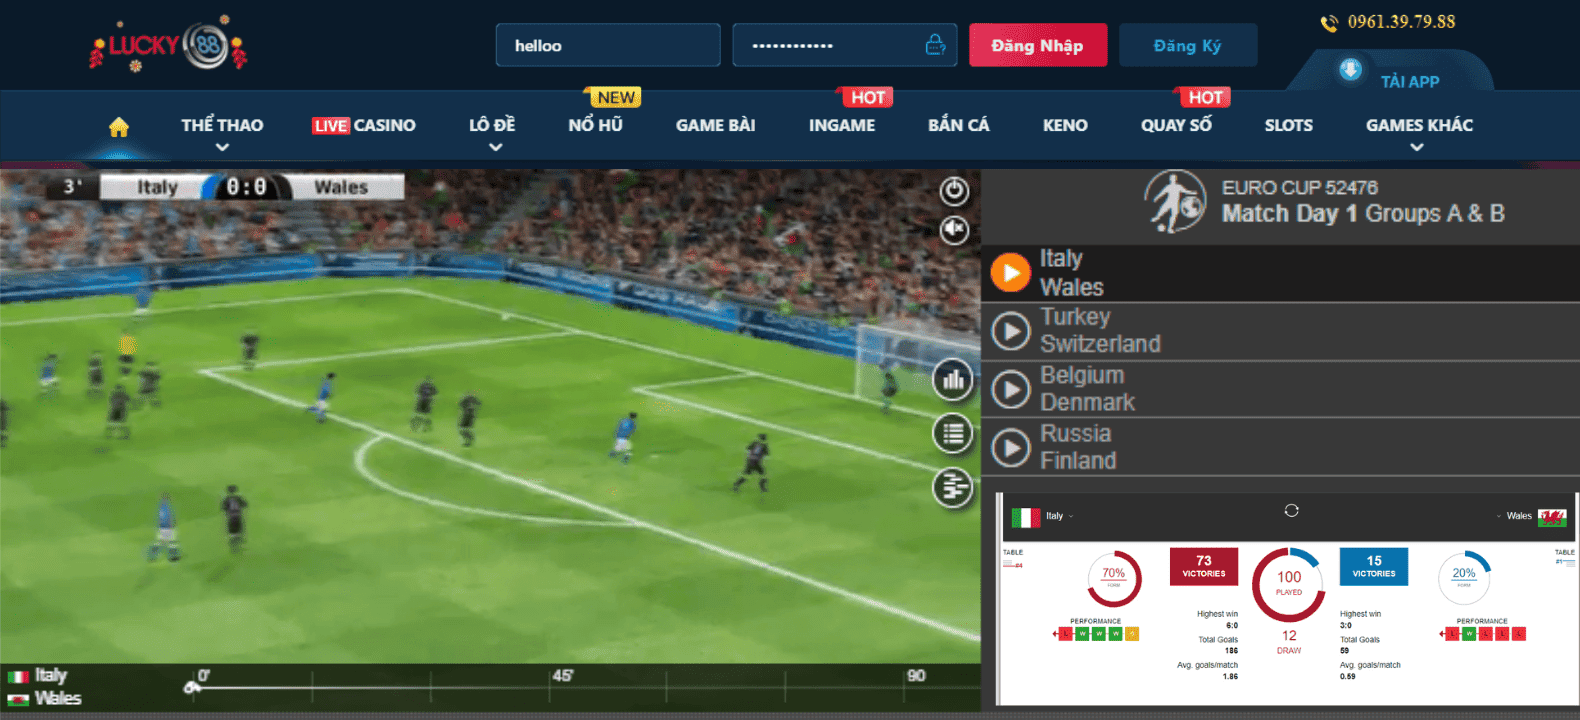 Hình ảnh giao diện màn hình cá cược thể thao ảo tại nhà cái Lucky88